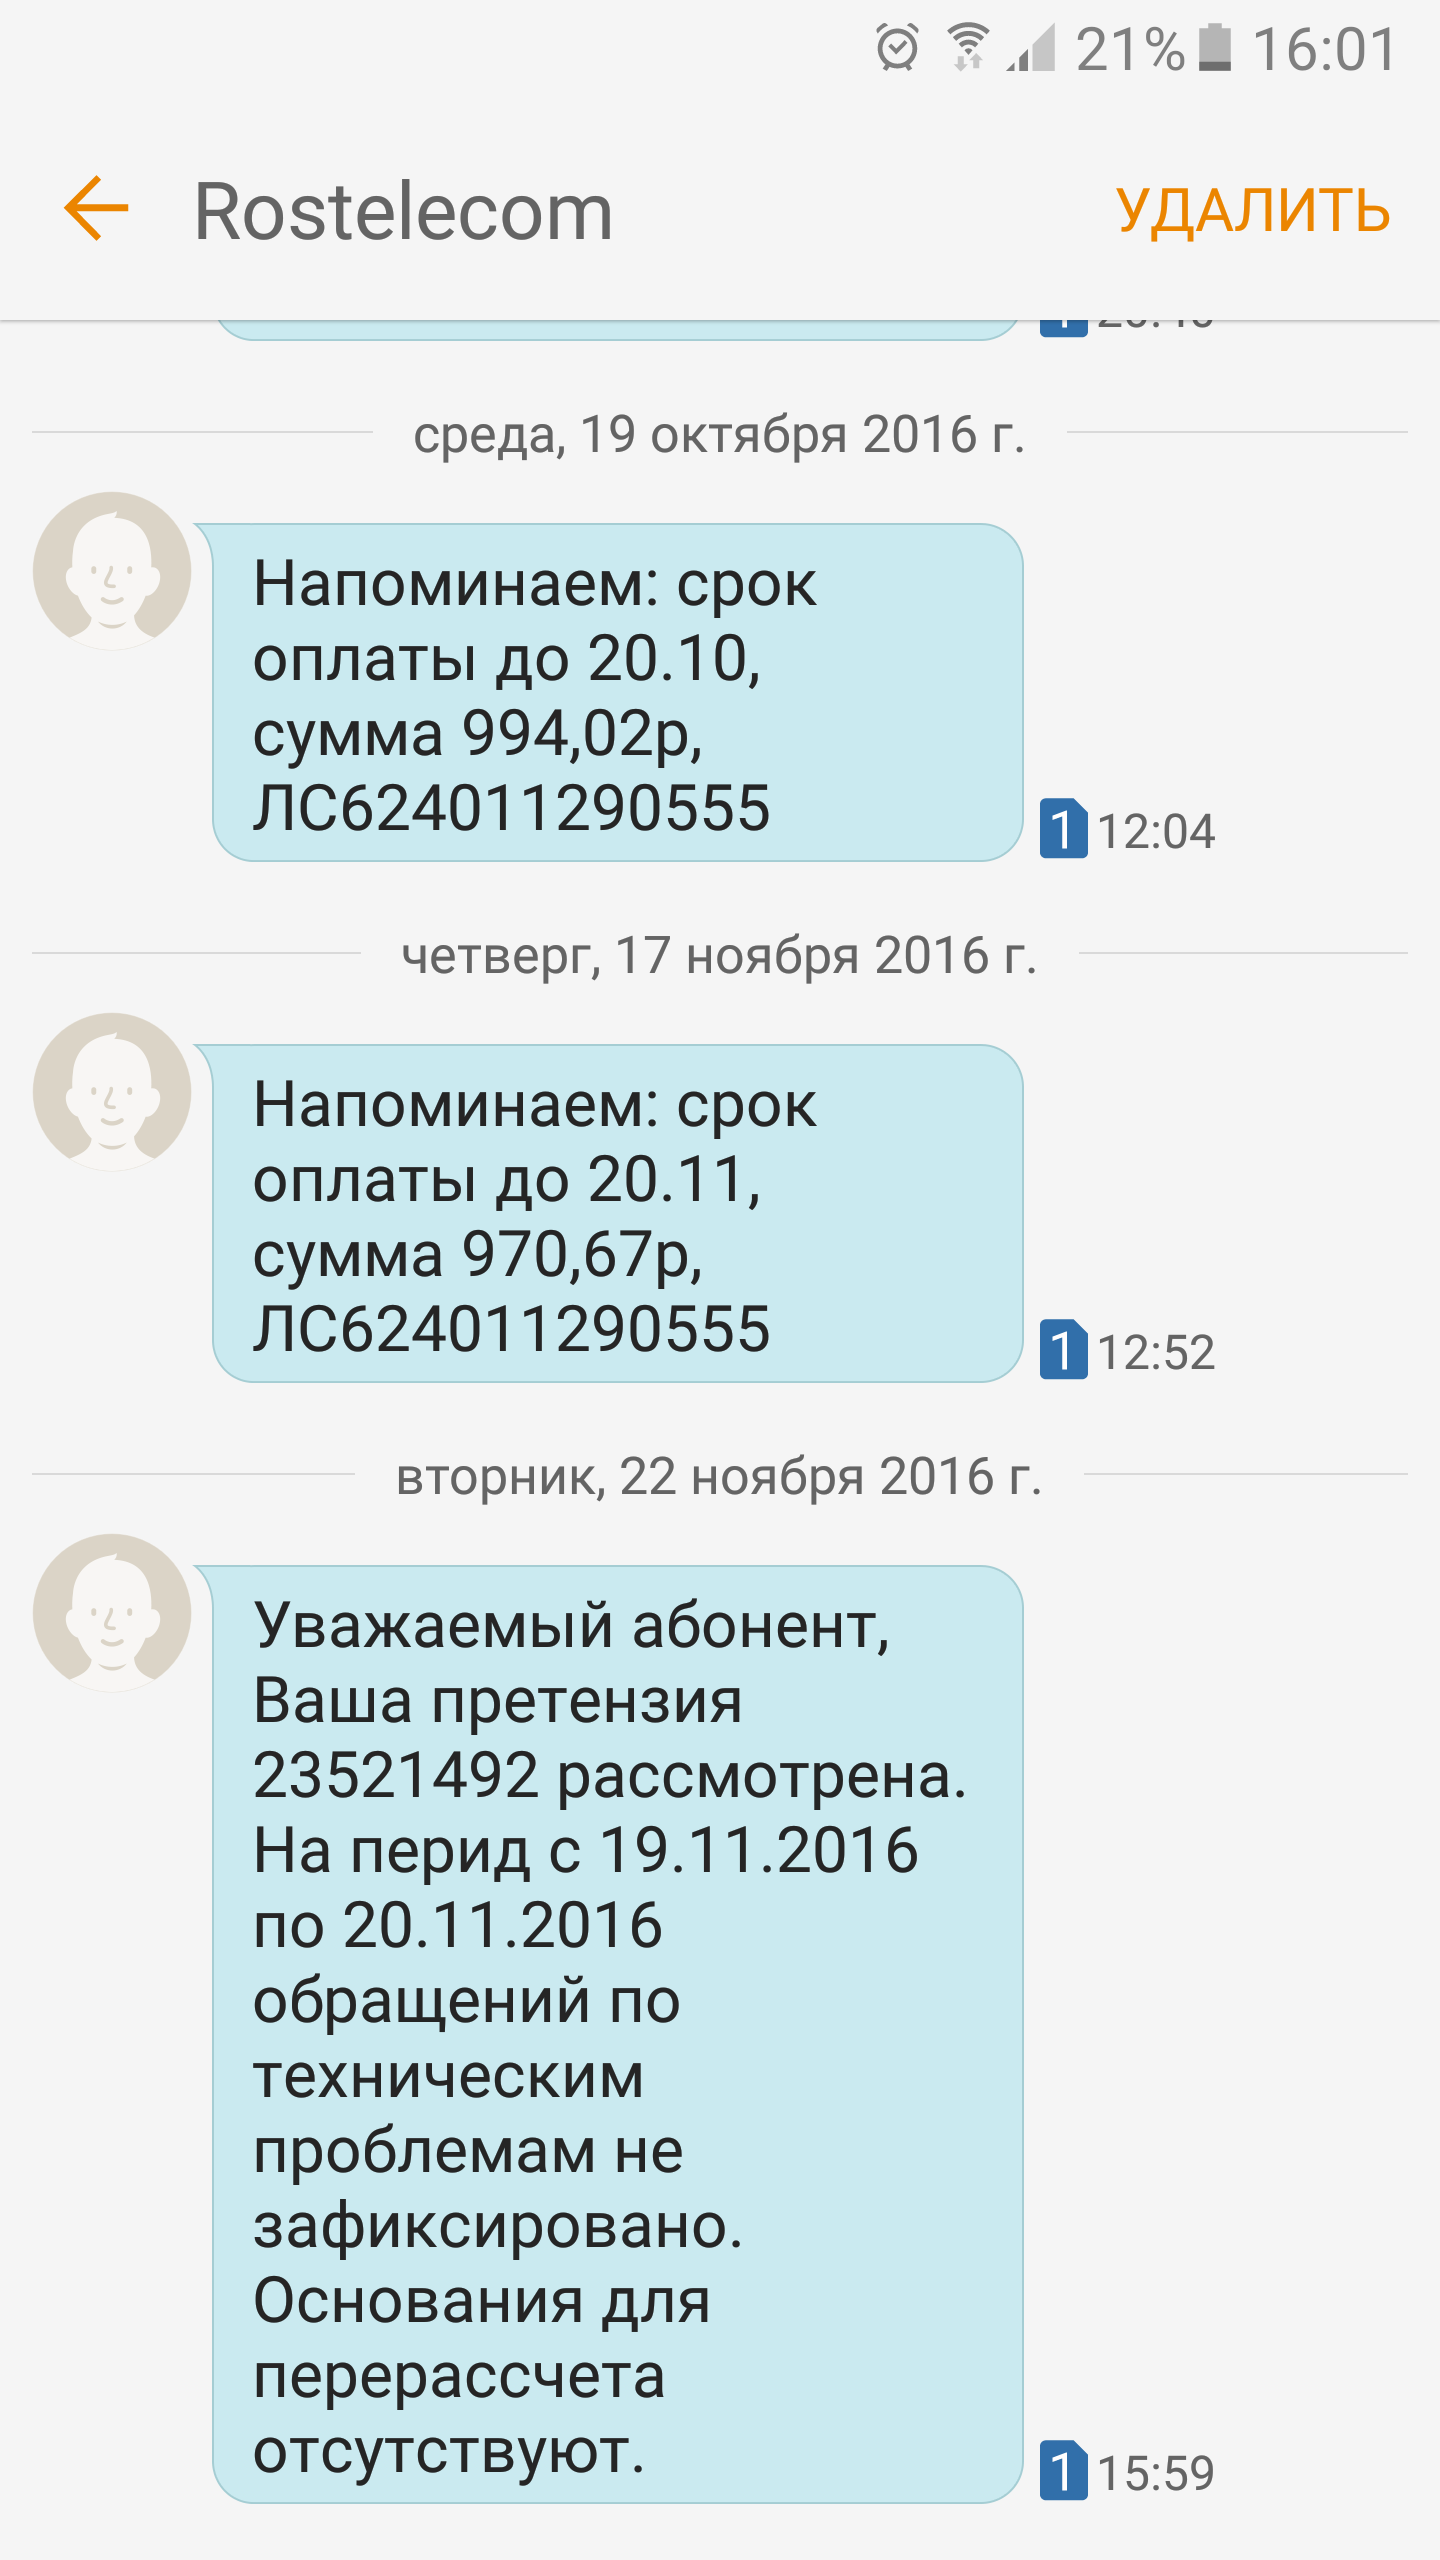 Саяногорск Инфо - screenshot_20161122-160125.png, Скачано: 392